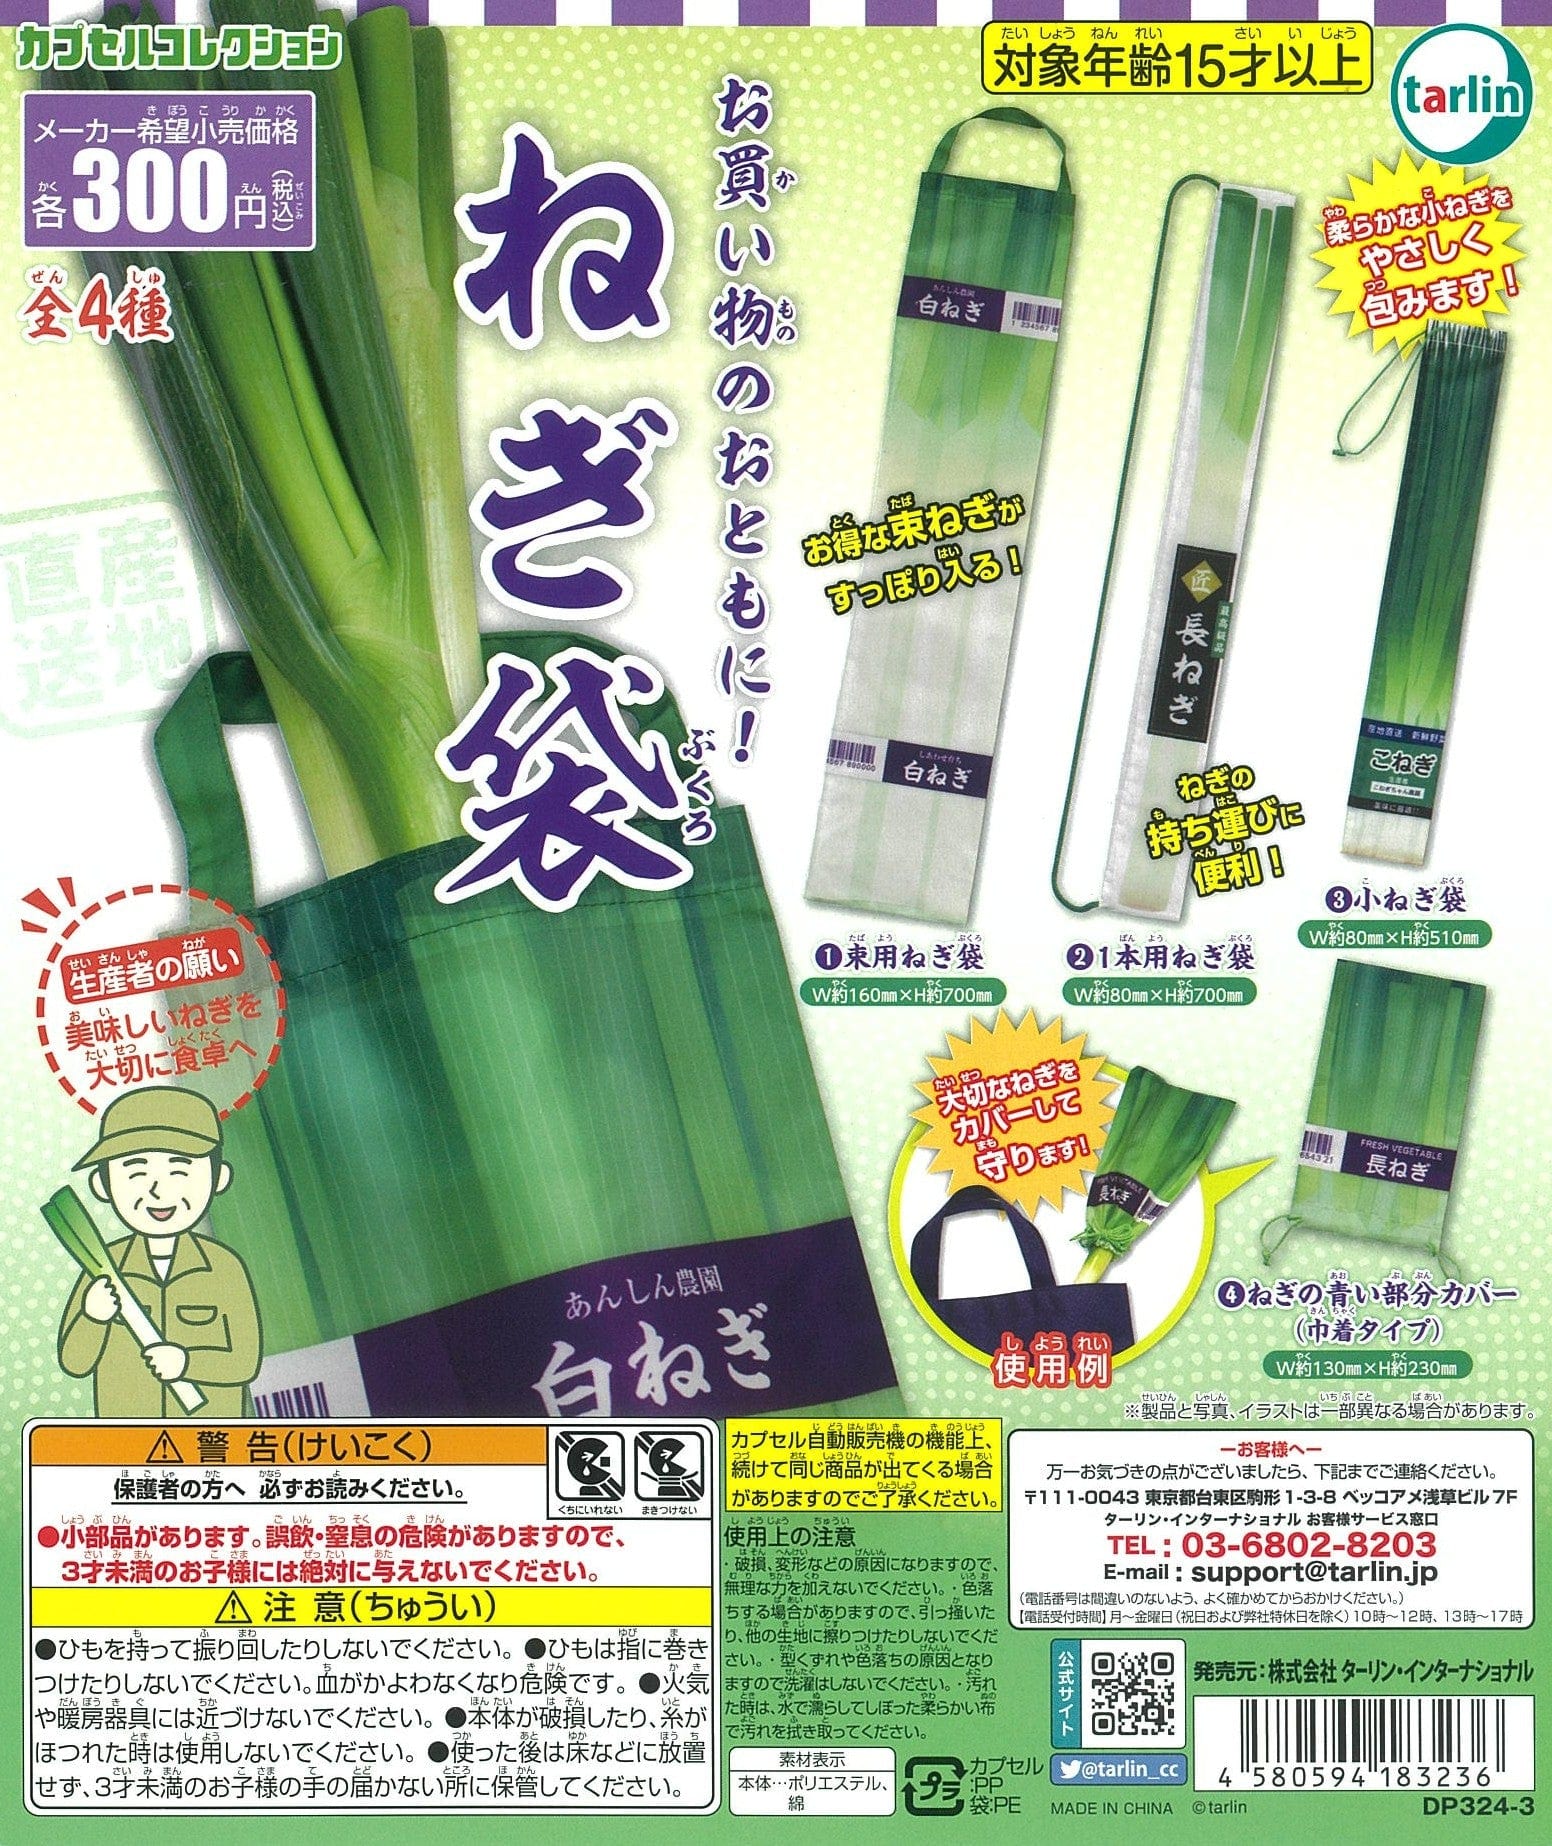 Tarlin CP1879 Green Onion Bag